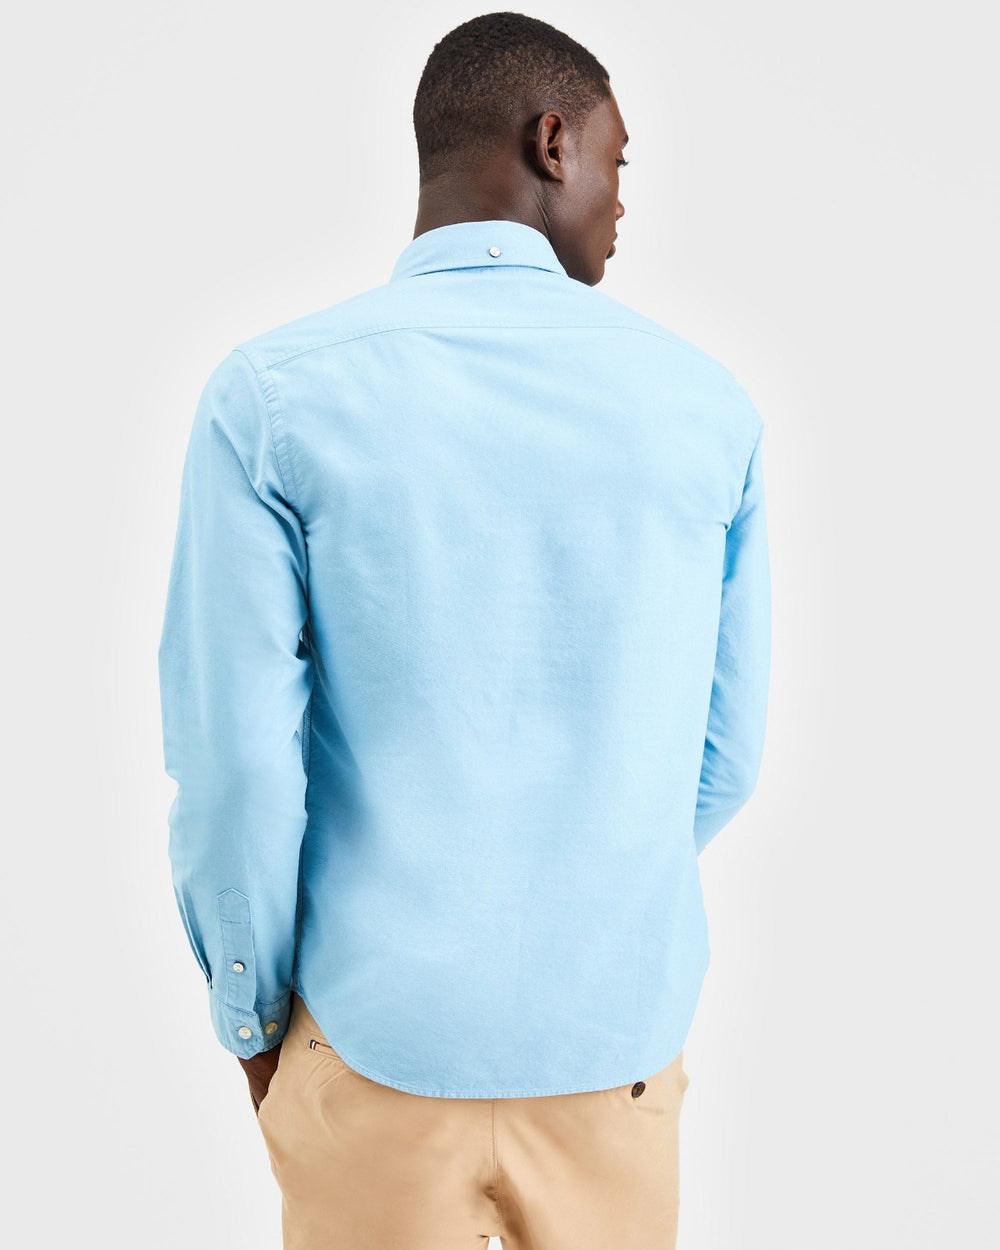 Beatnik Oxford Garment Dye Shirt - Fresh Blue - Ben Sherman